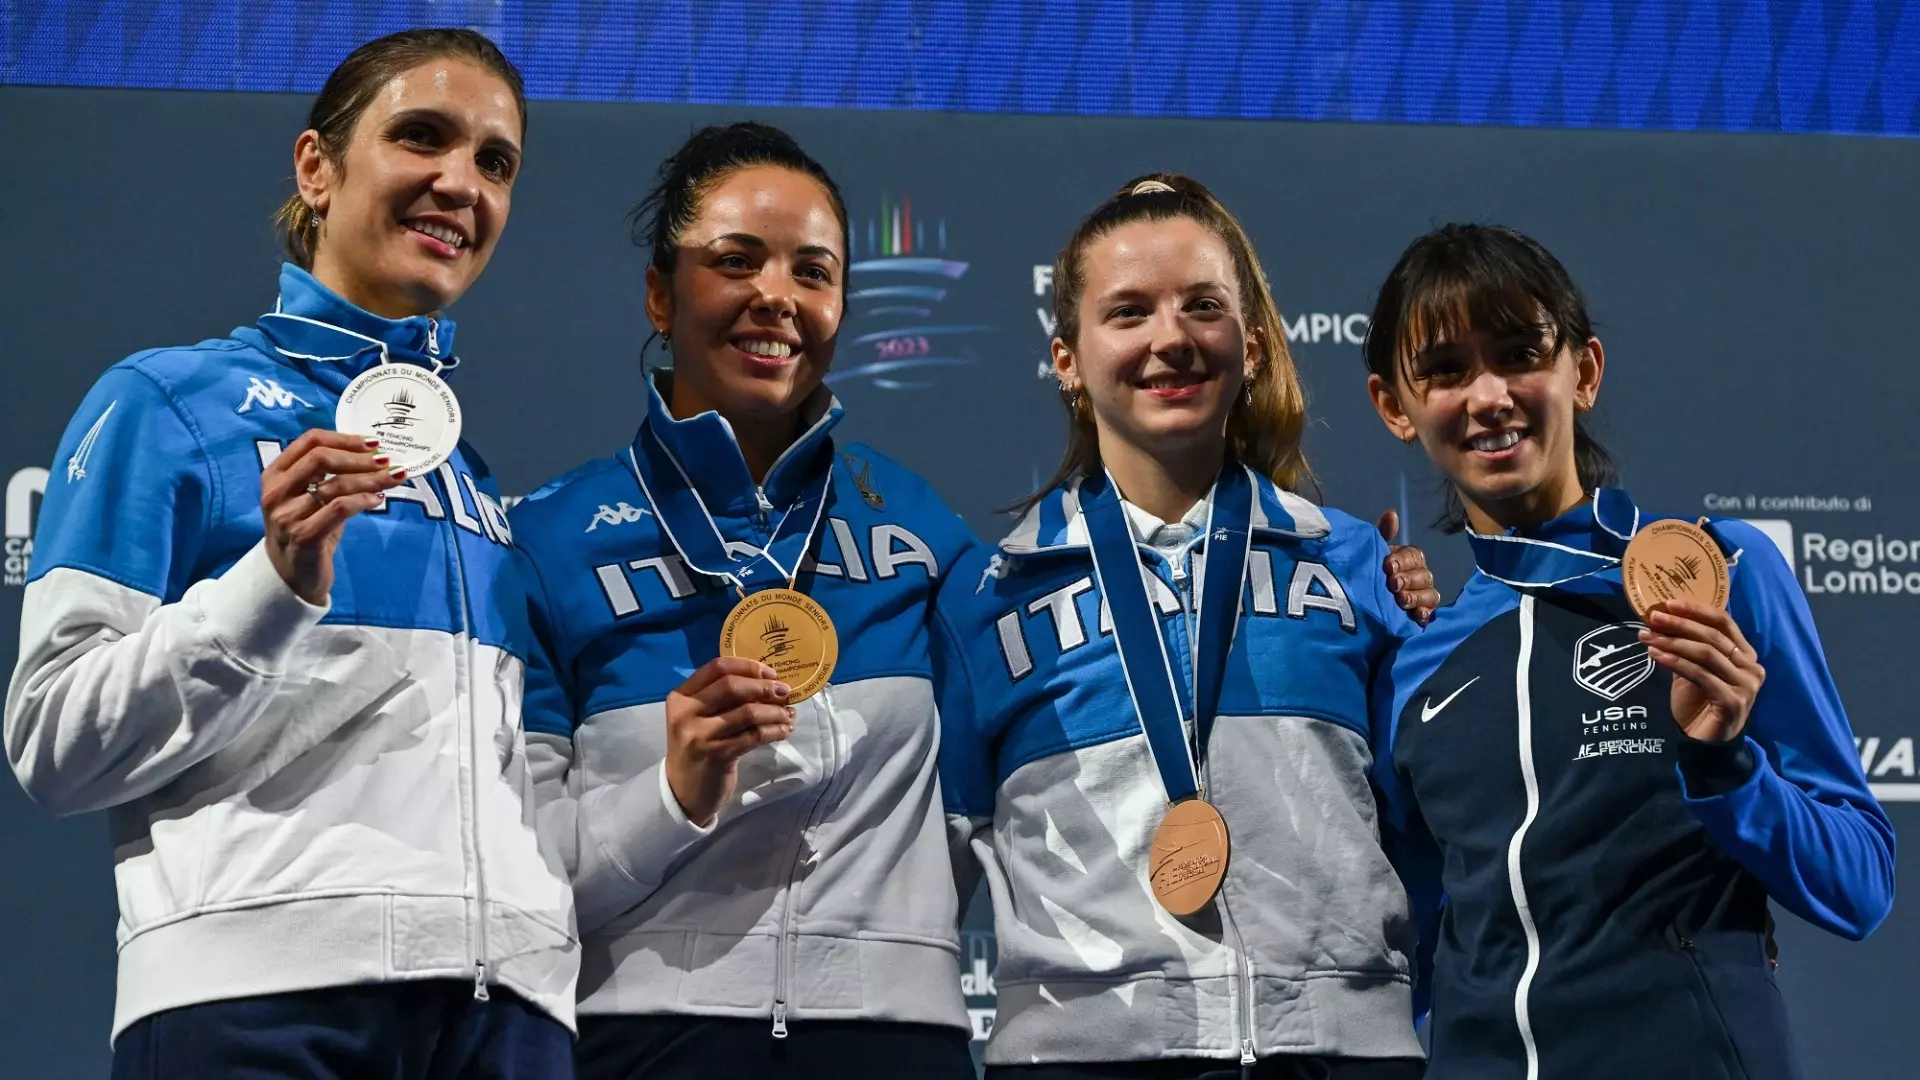 Mondiali: tris azzurro nel fioretto, trionfa Alice Volpi. Arianna Errigo commossa